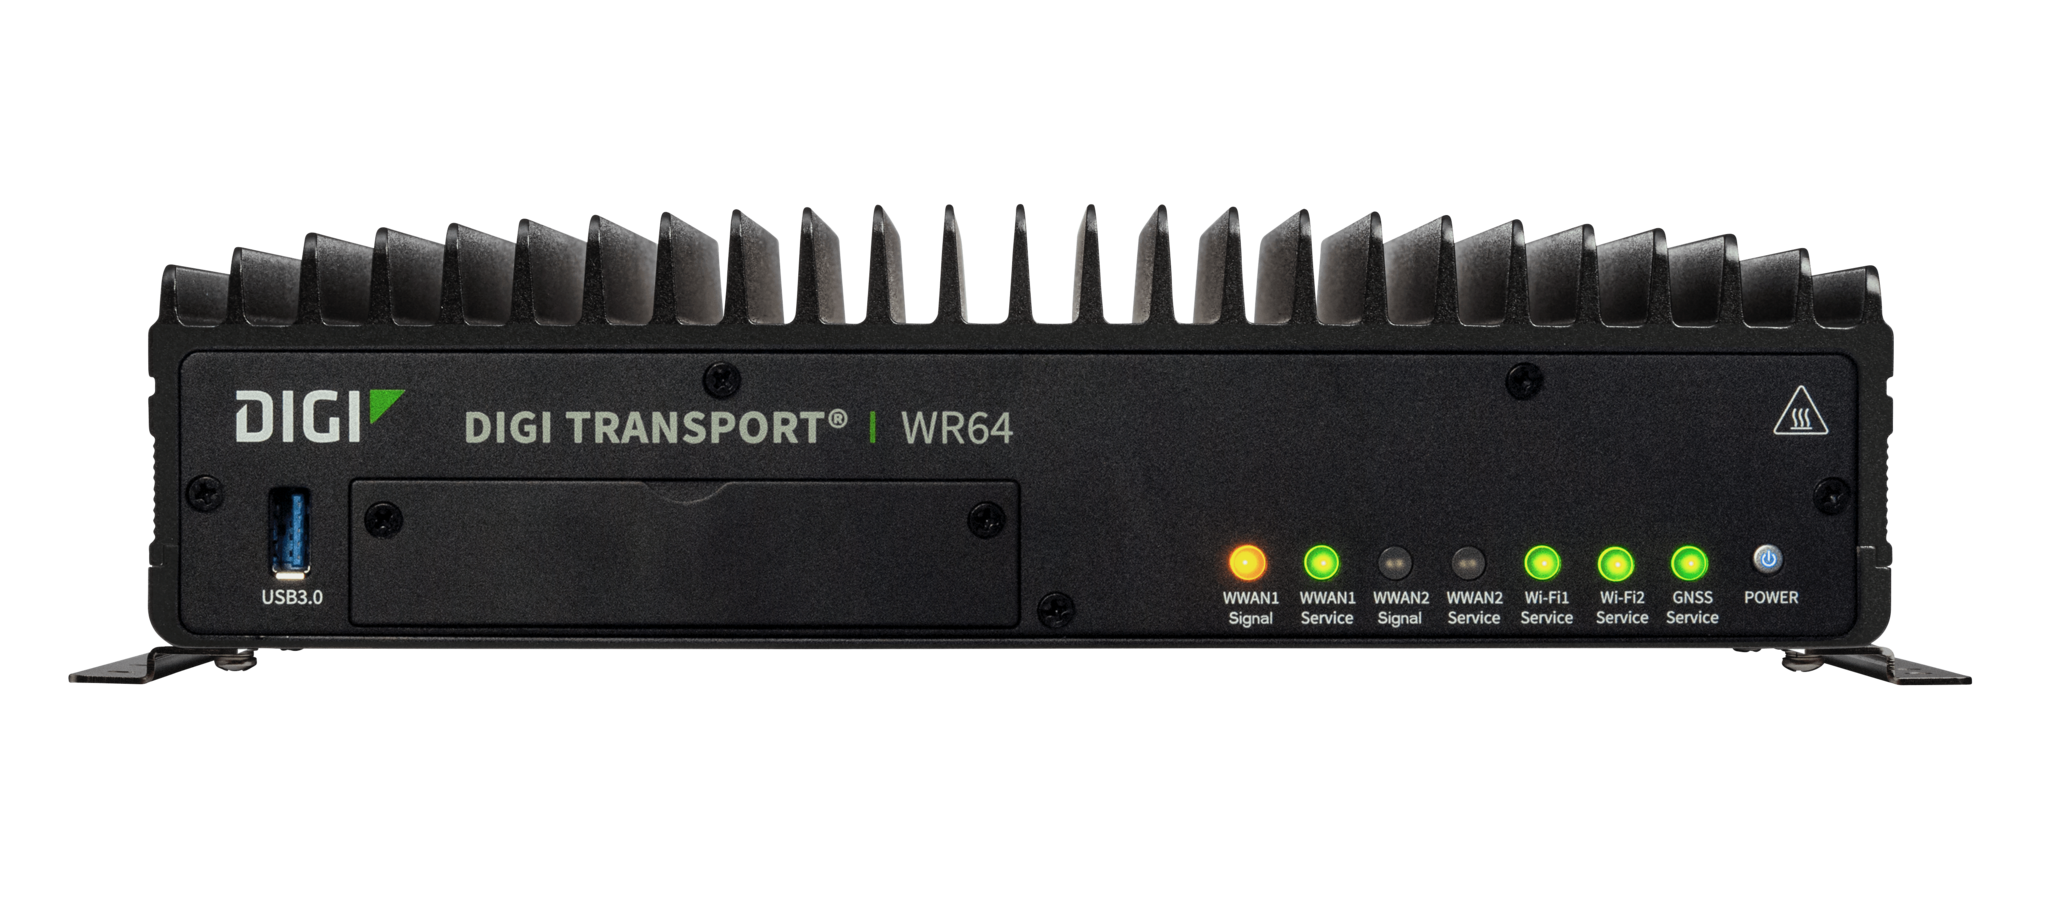 Digi TransPort WR64 dual LTE router